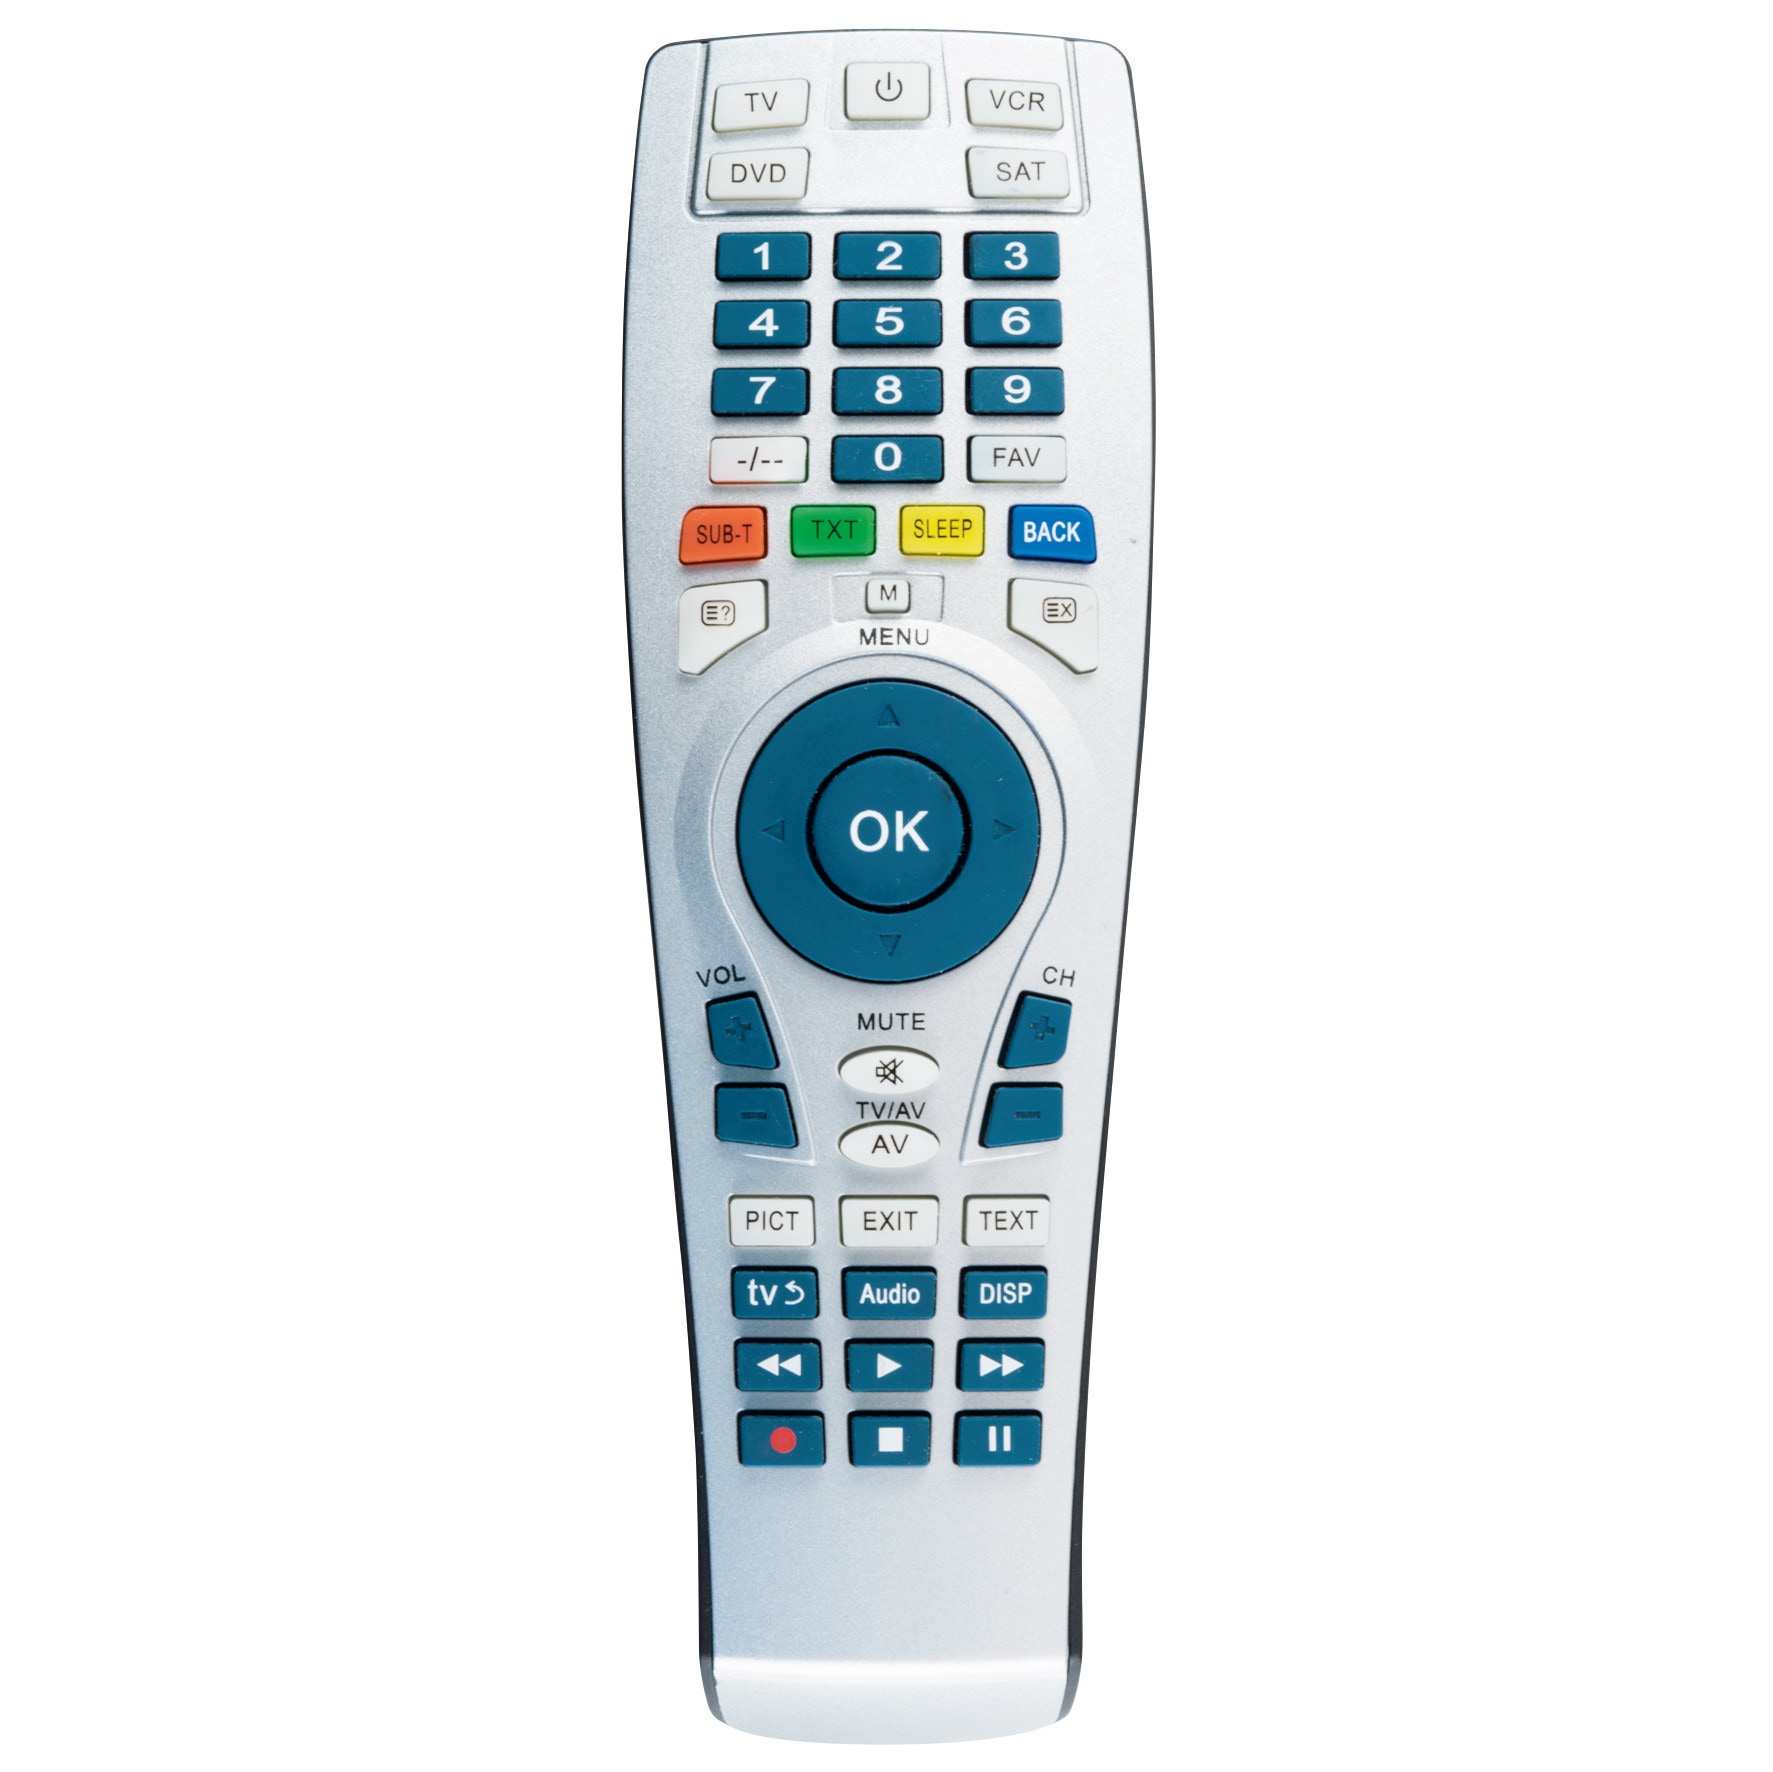 Telecomanda universala 4 in 1 pentru TV, DVD, VCR, SAT, Home URC 22, argintie